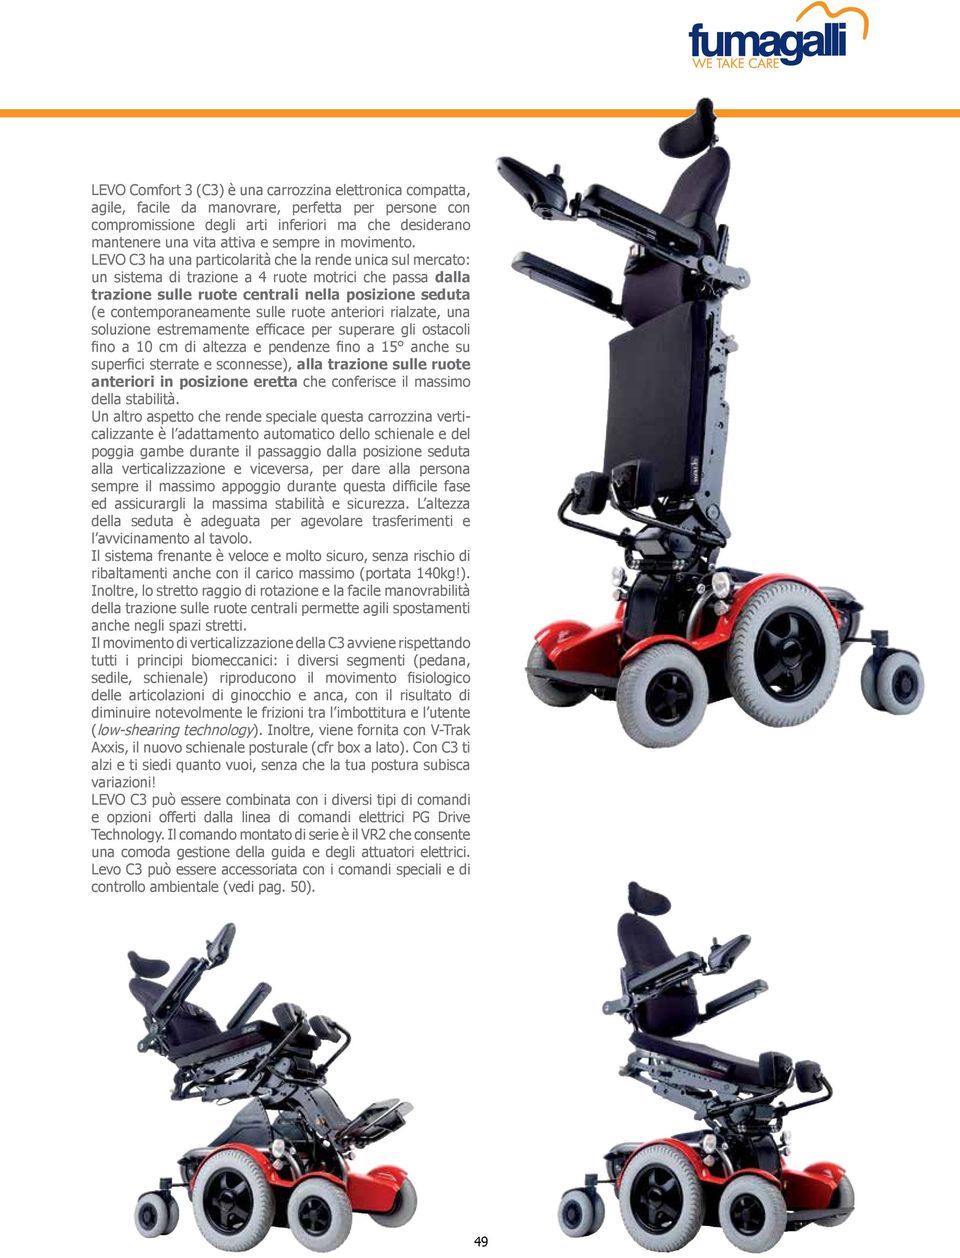 LEVO C3 ha una particolarità che la rende unica sul mercato: un sistema di trazione a 4 ruote motrici che passa dalla trazione sulle ruote centrali nella posizione seduta (e contemporaneamente sulle